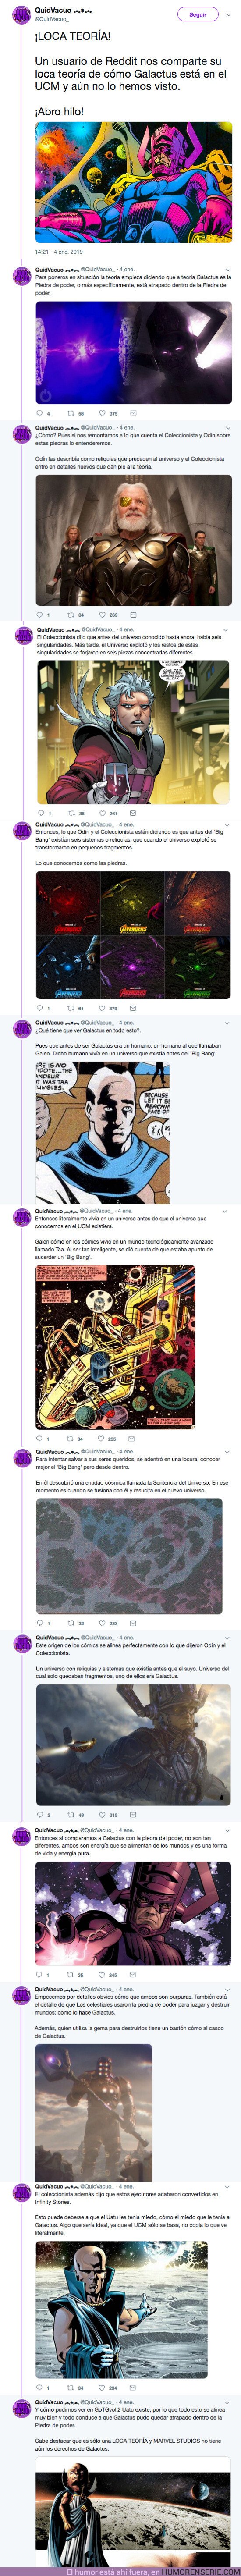 33480 - Un usuario de Reddit nos comparte su loca teoría de cómo Galactus está en el UCM y aún no lo hemos visto